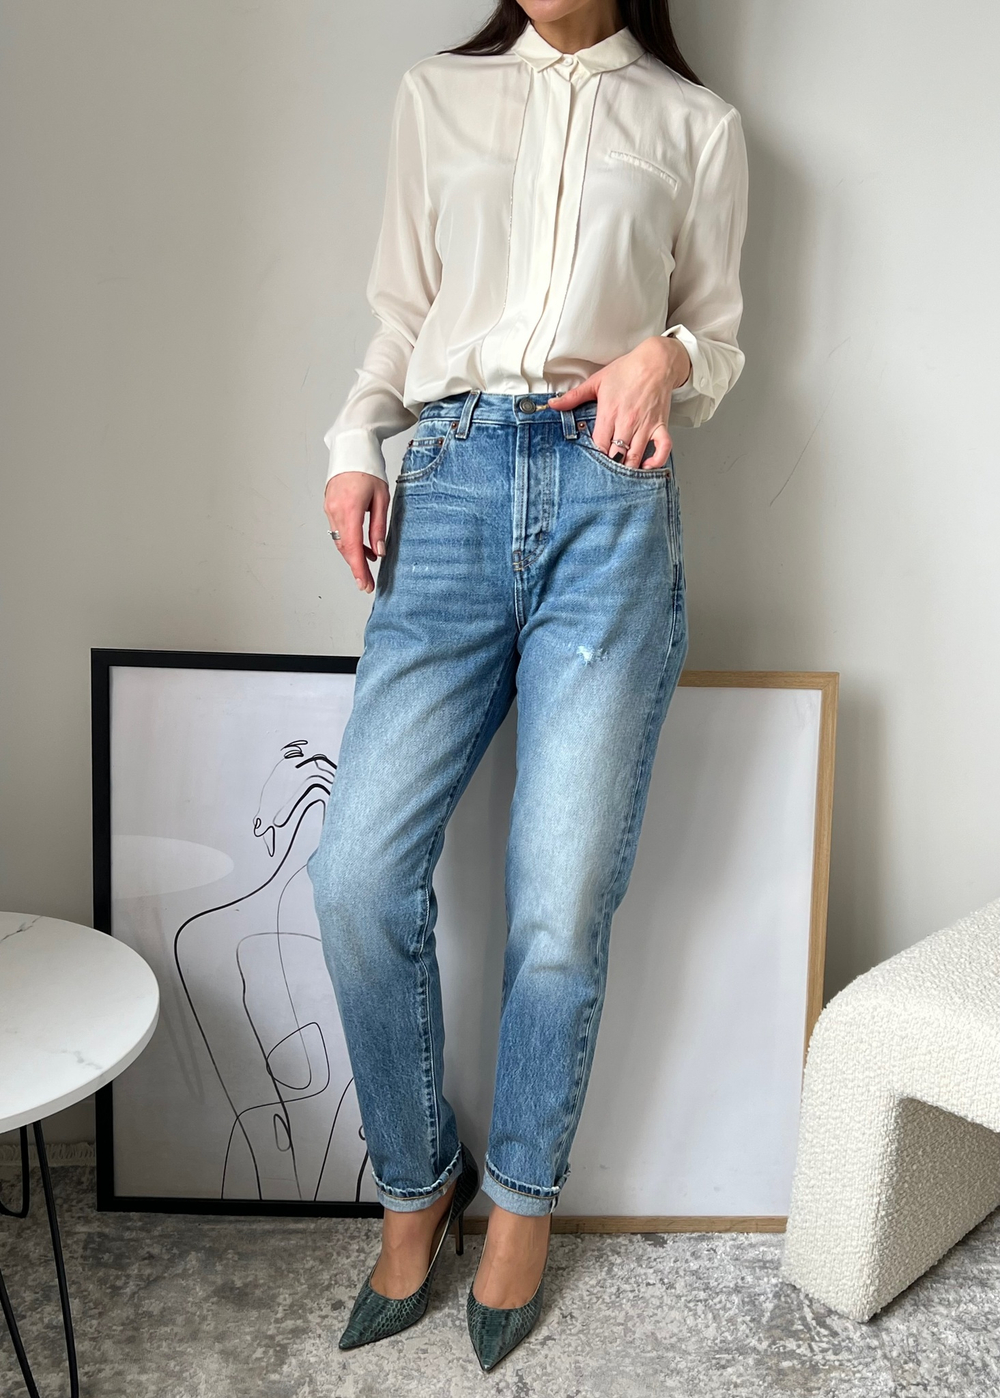 Новые джинсы Saint Laurent, S